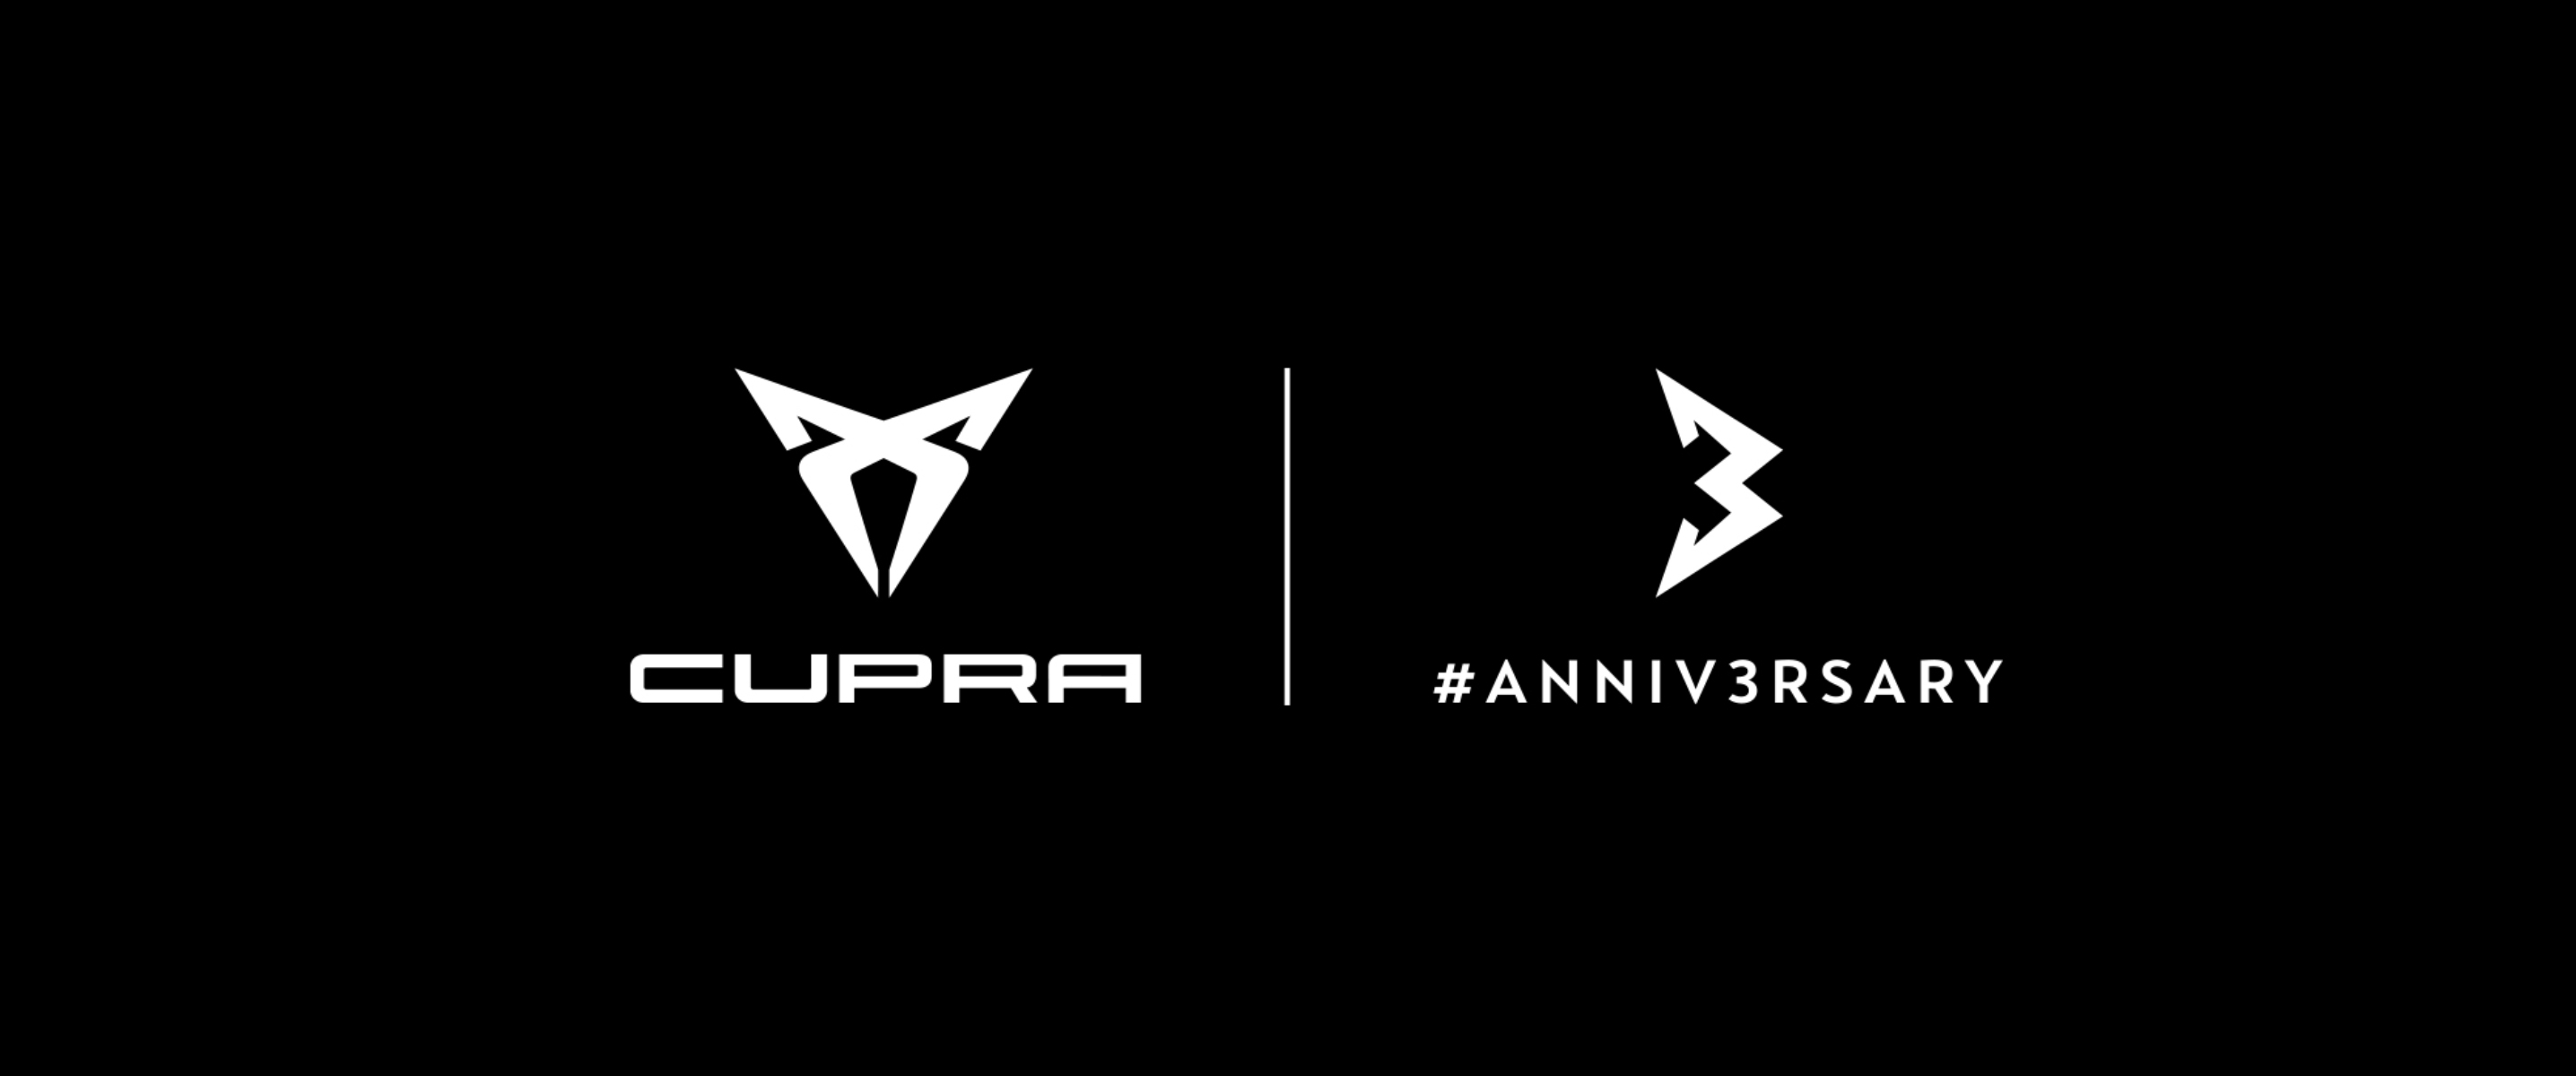 CUPRA's third anniversary logo